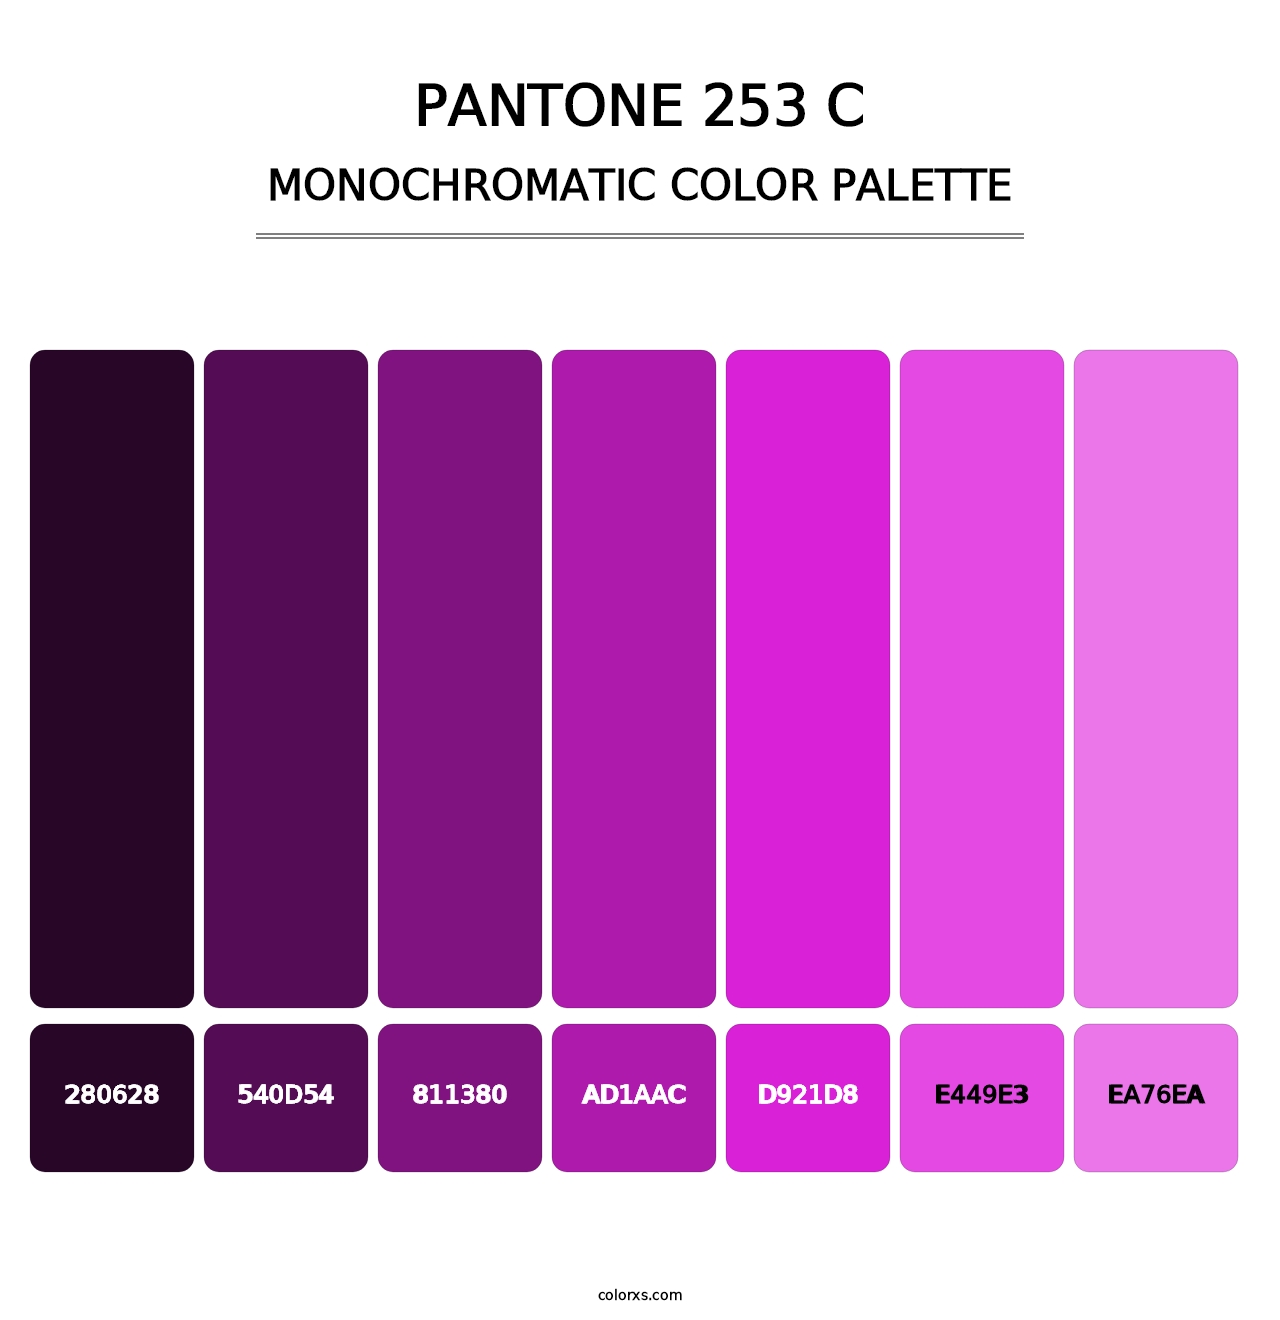 PANTONE 253 C - Monochromatic Color Palette